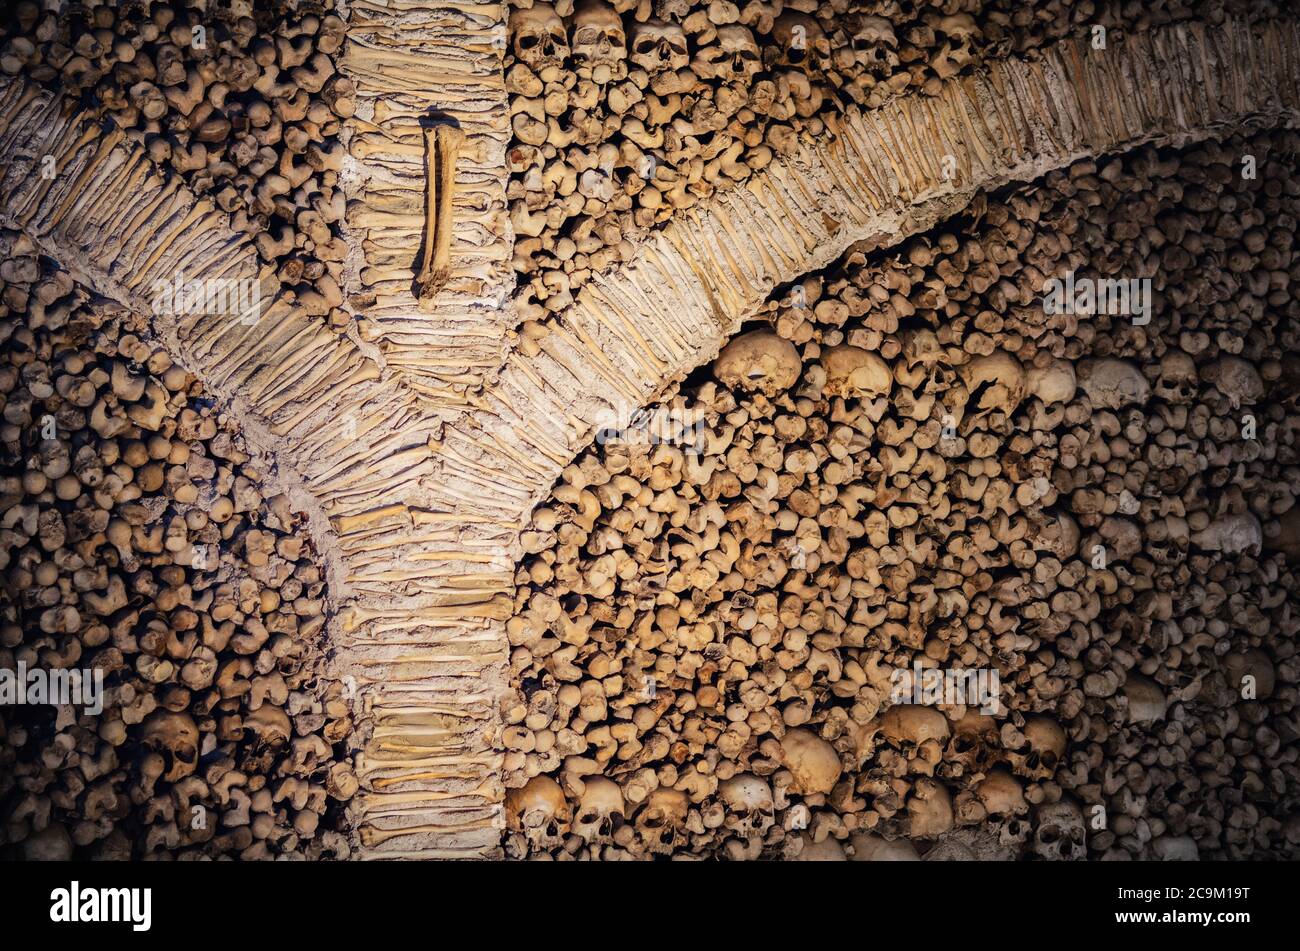 EVORA, PORTOGALLO - 1 FEBBRAIO 2019: Dettaglio della Capela dos Ossos, famosa cappella interna coperta da ossa umane all'interno della chiesa di San Francesco i Foto Stock